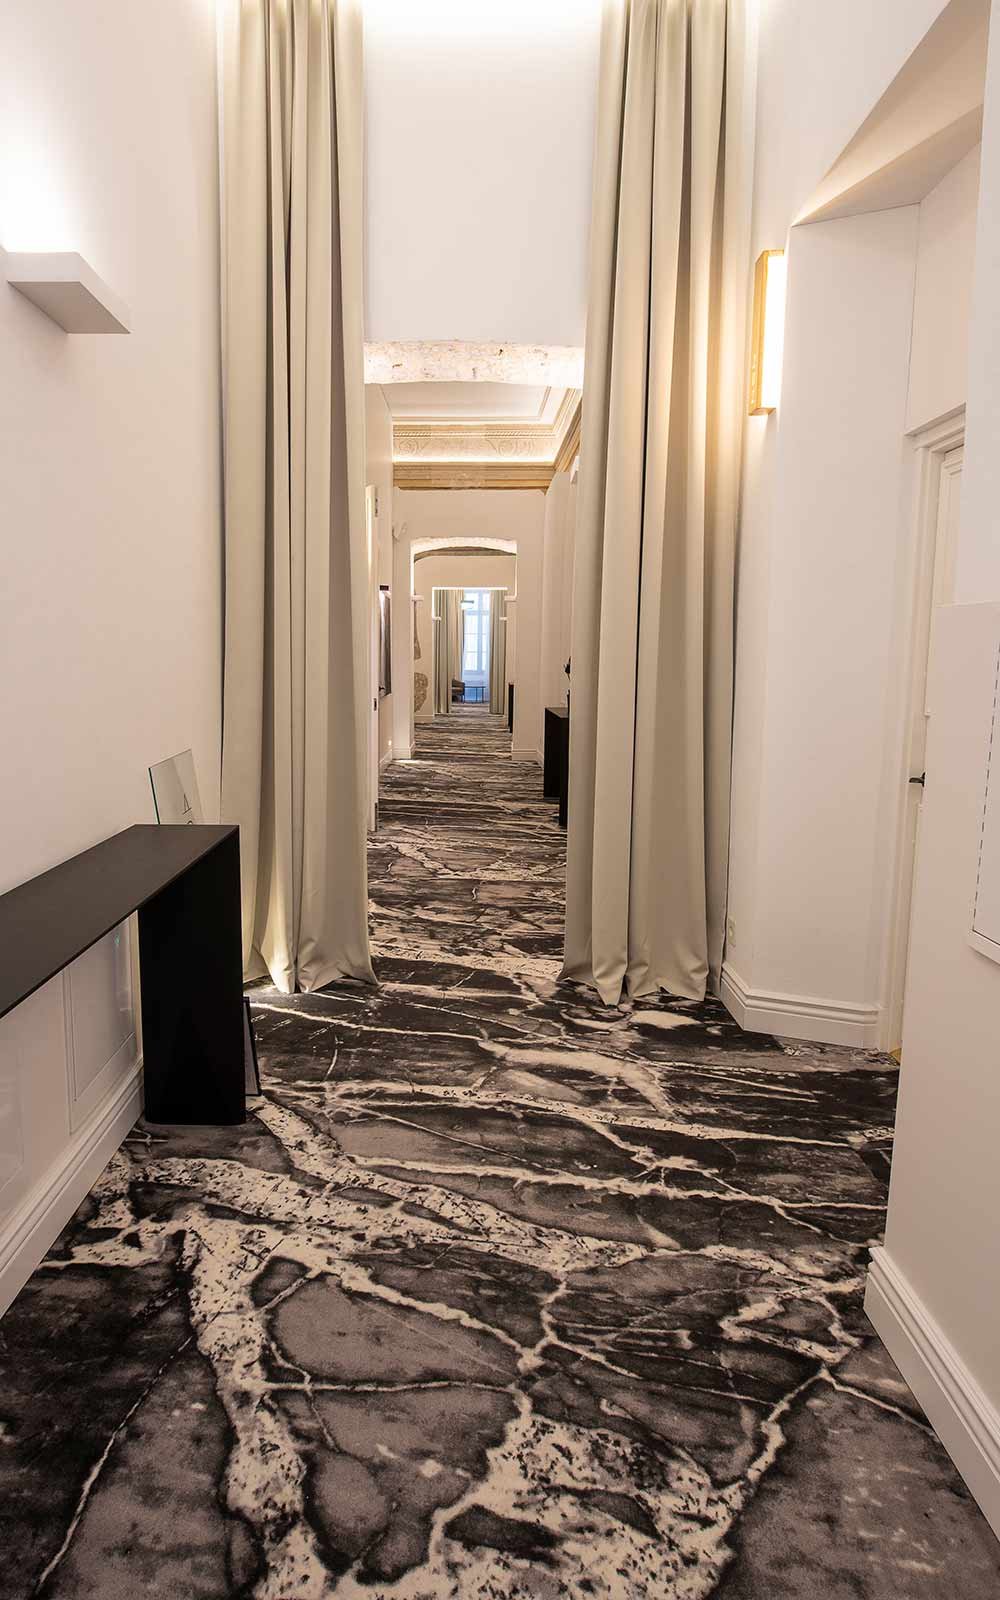 Hotel Teppichboden - Teppichboden in Marmoroptik und hellen Wänden und Vorhängen